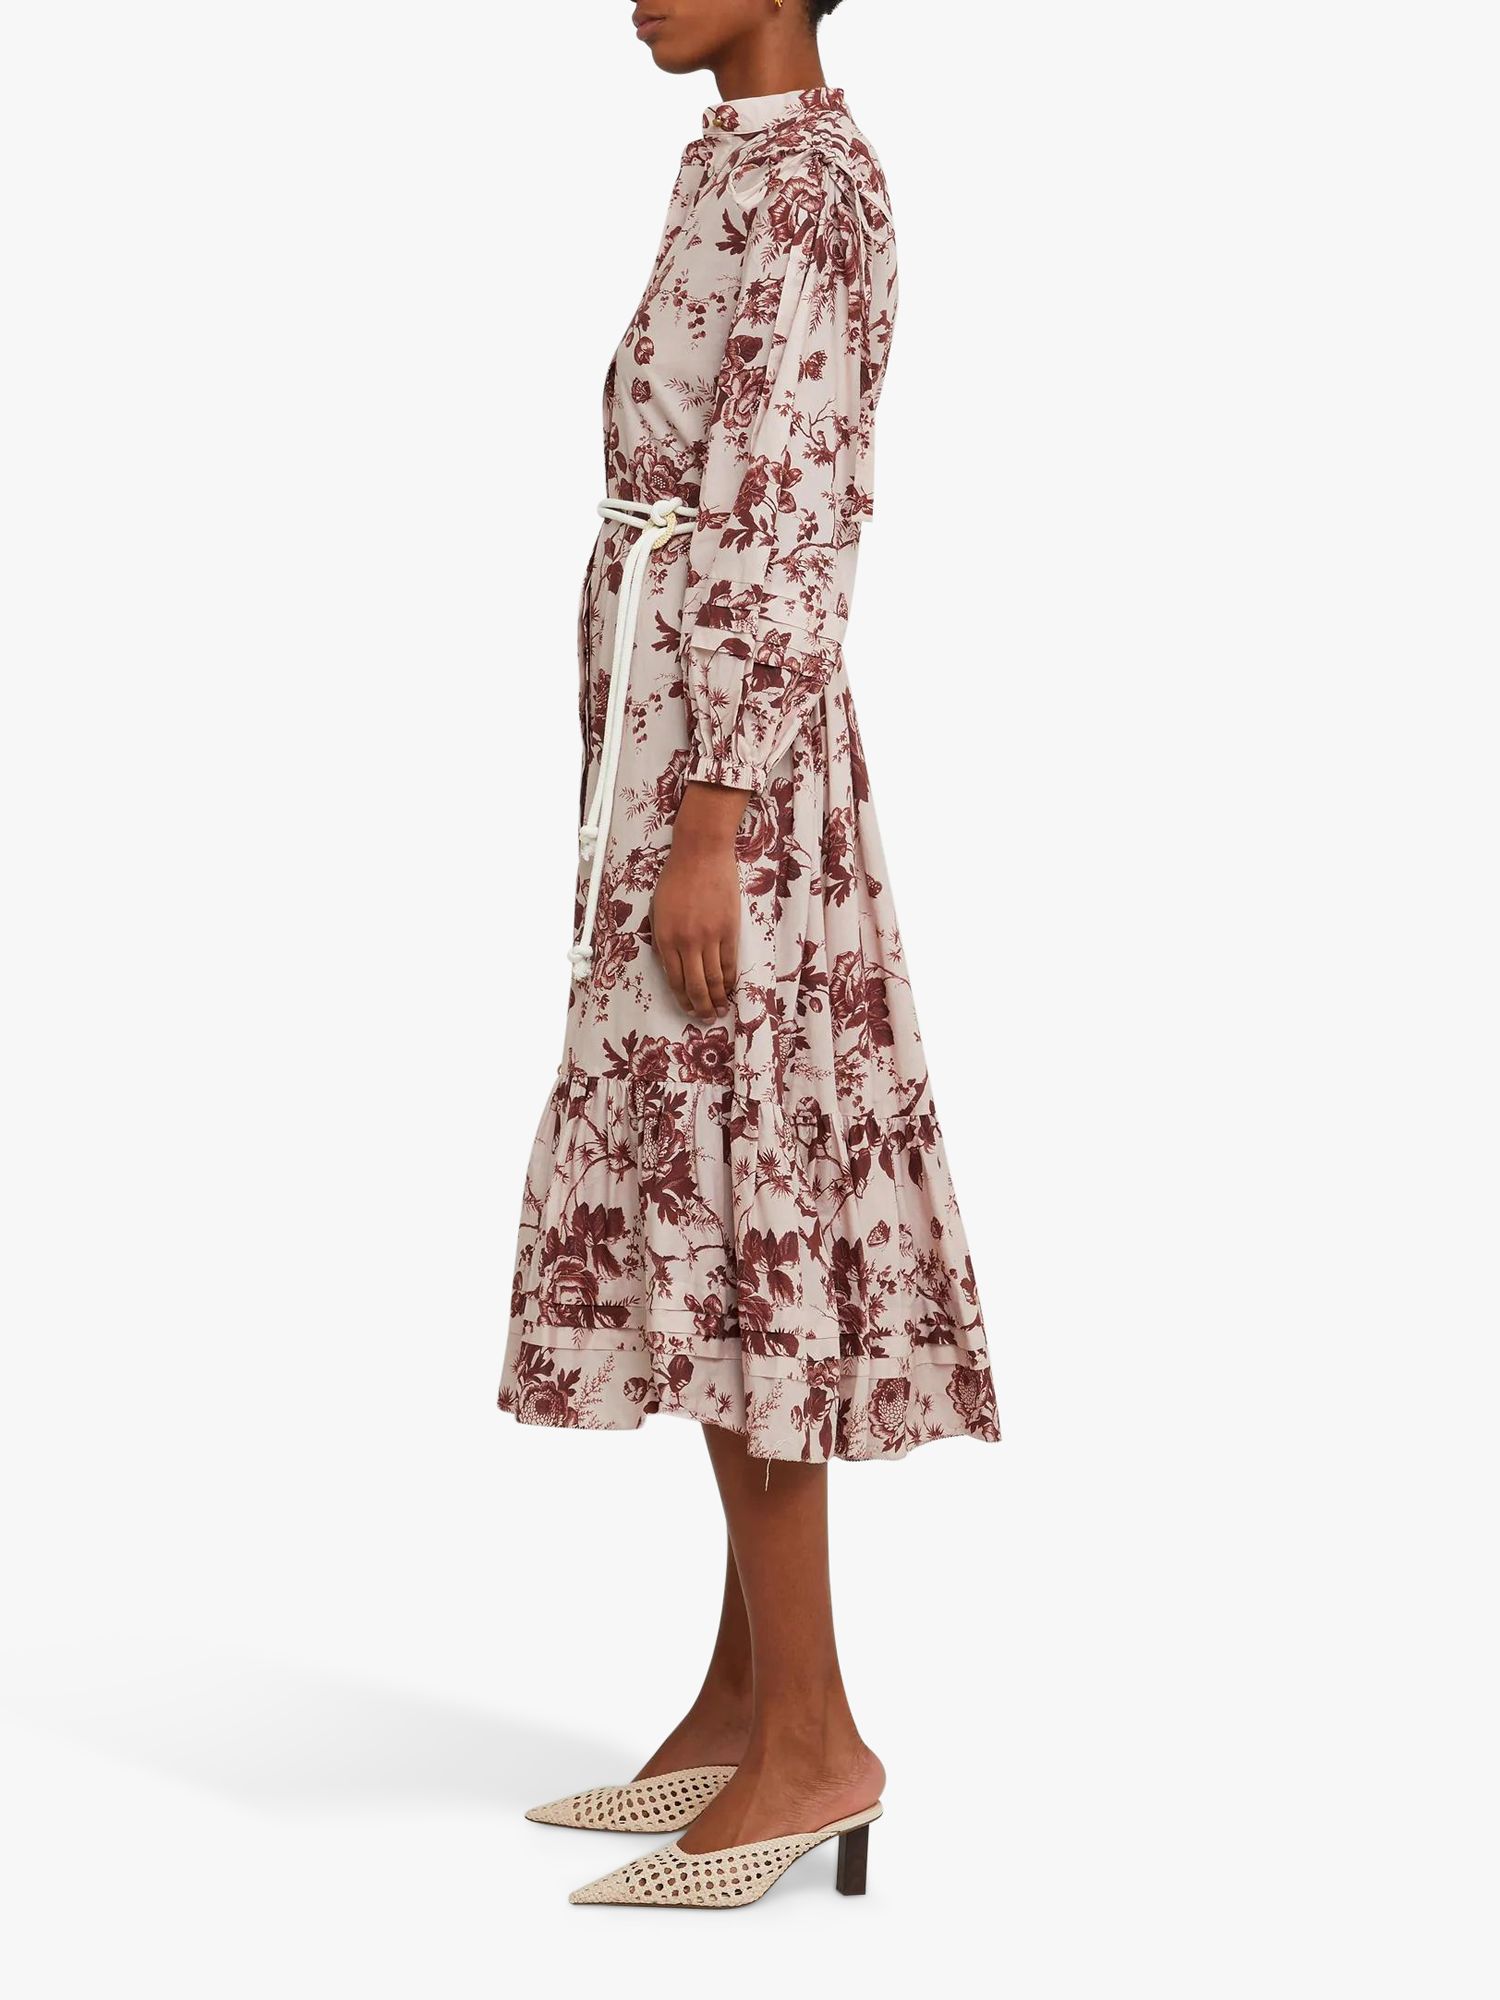 o.p.t Seko Tiered Hem Floral Midi Dress, Maroon/Multi, S